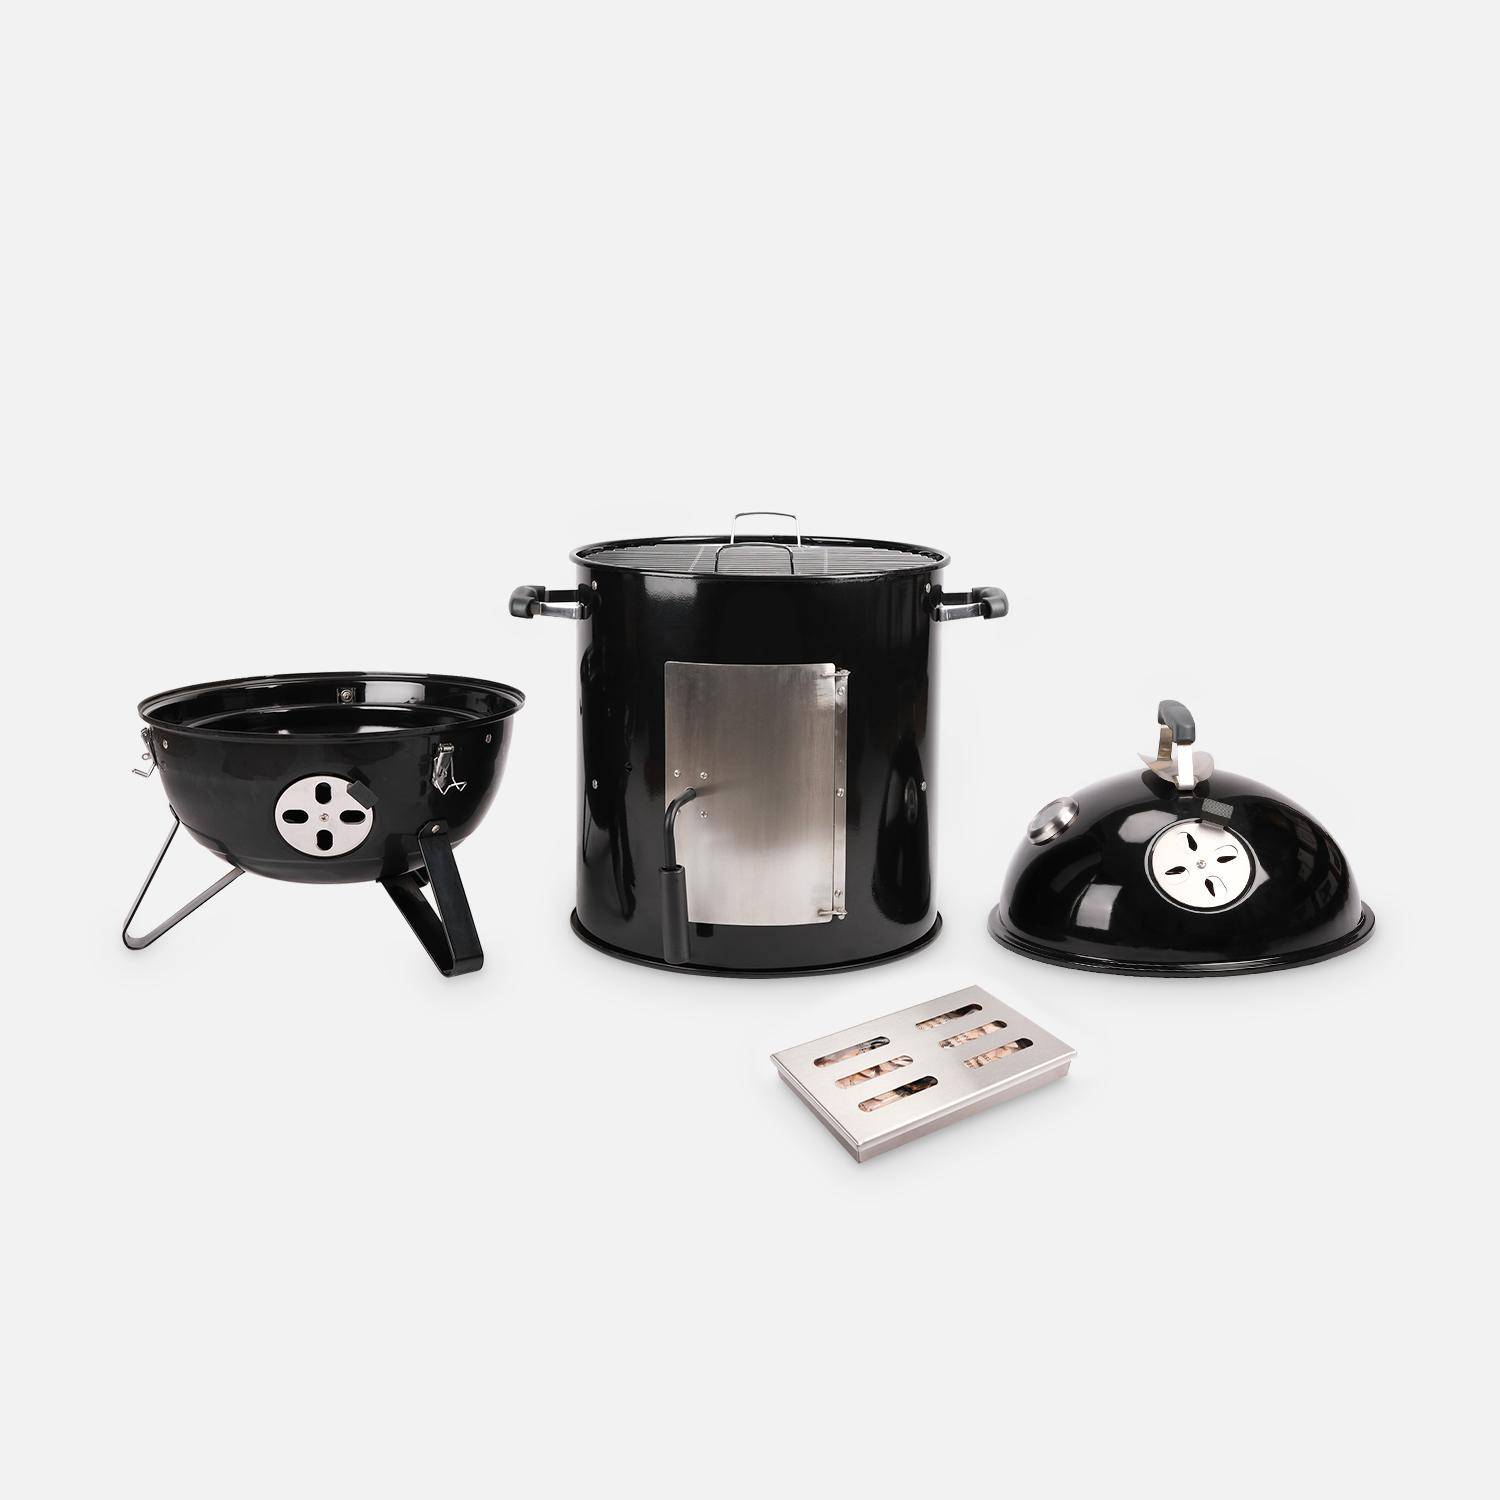 Barbacue humador de carvão Premium com arejadores de ar , fumador, 2 grelhador, compartimento para humador l JUAN Photo4